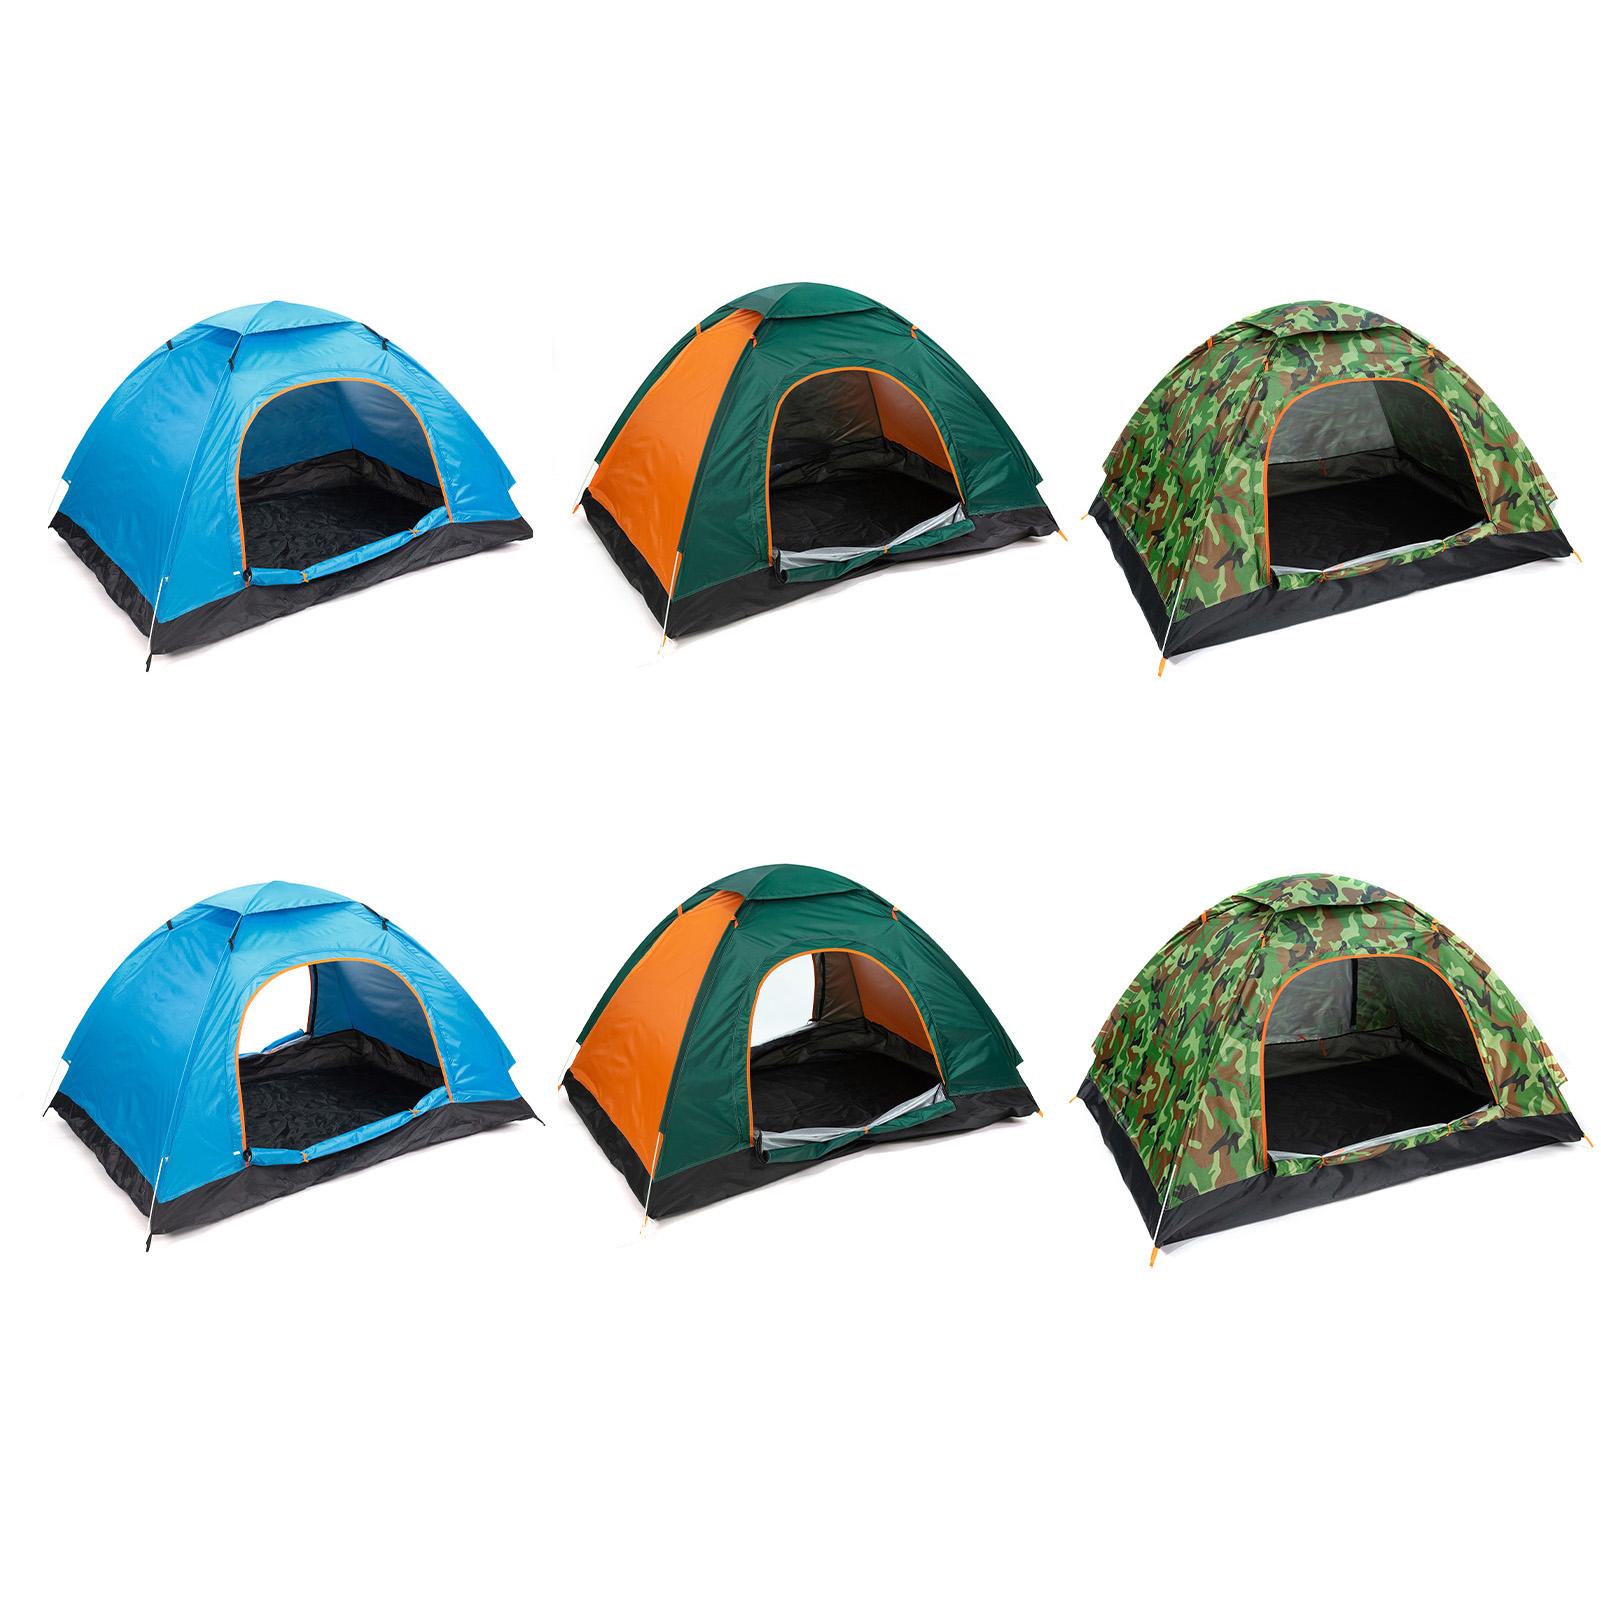 Lều cắm trại dã ngoại mái vòm tự bung cho 2 người, bằng vải polyester chống thấm nước